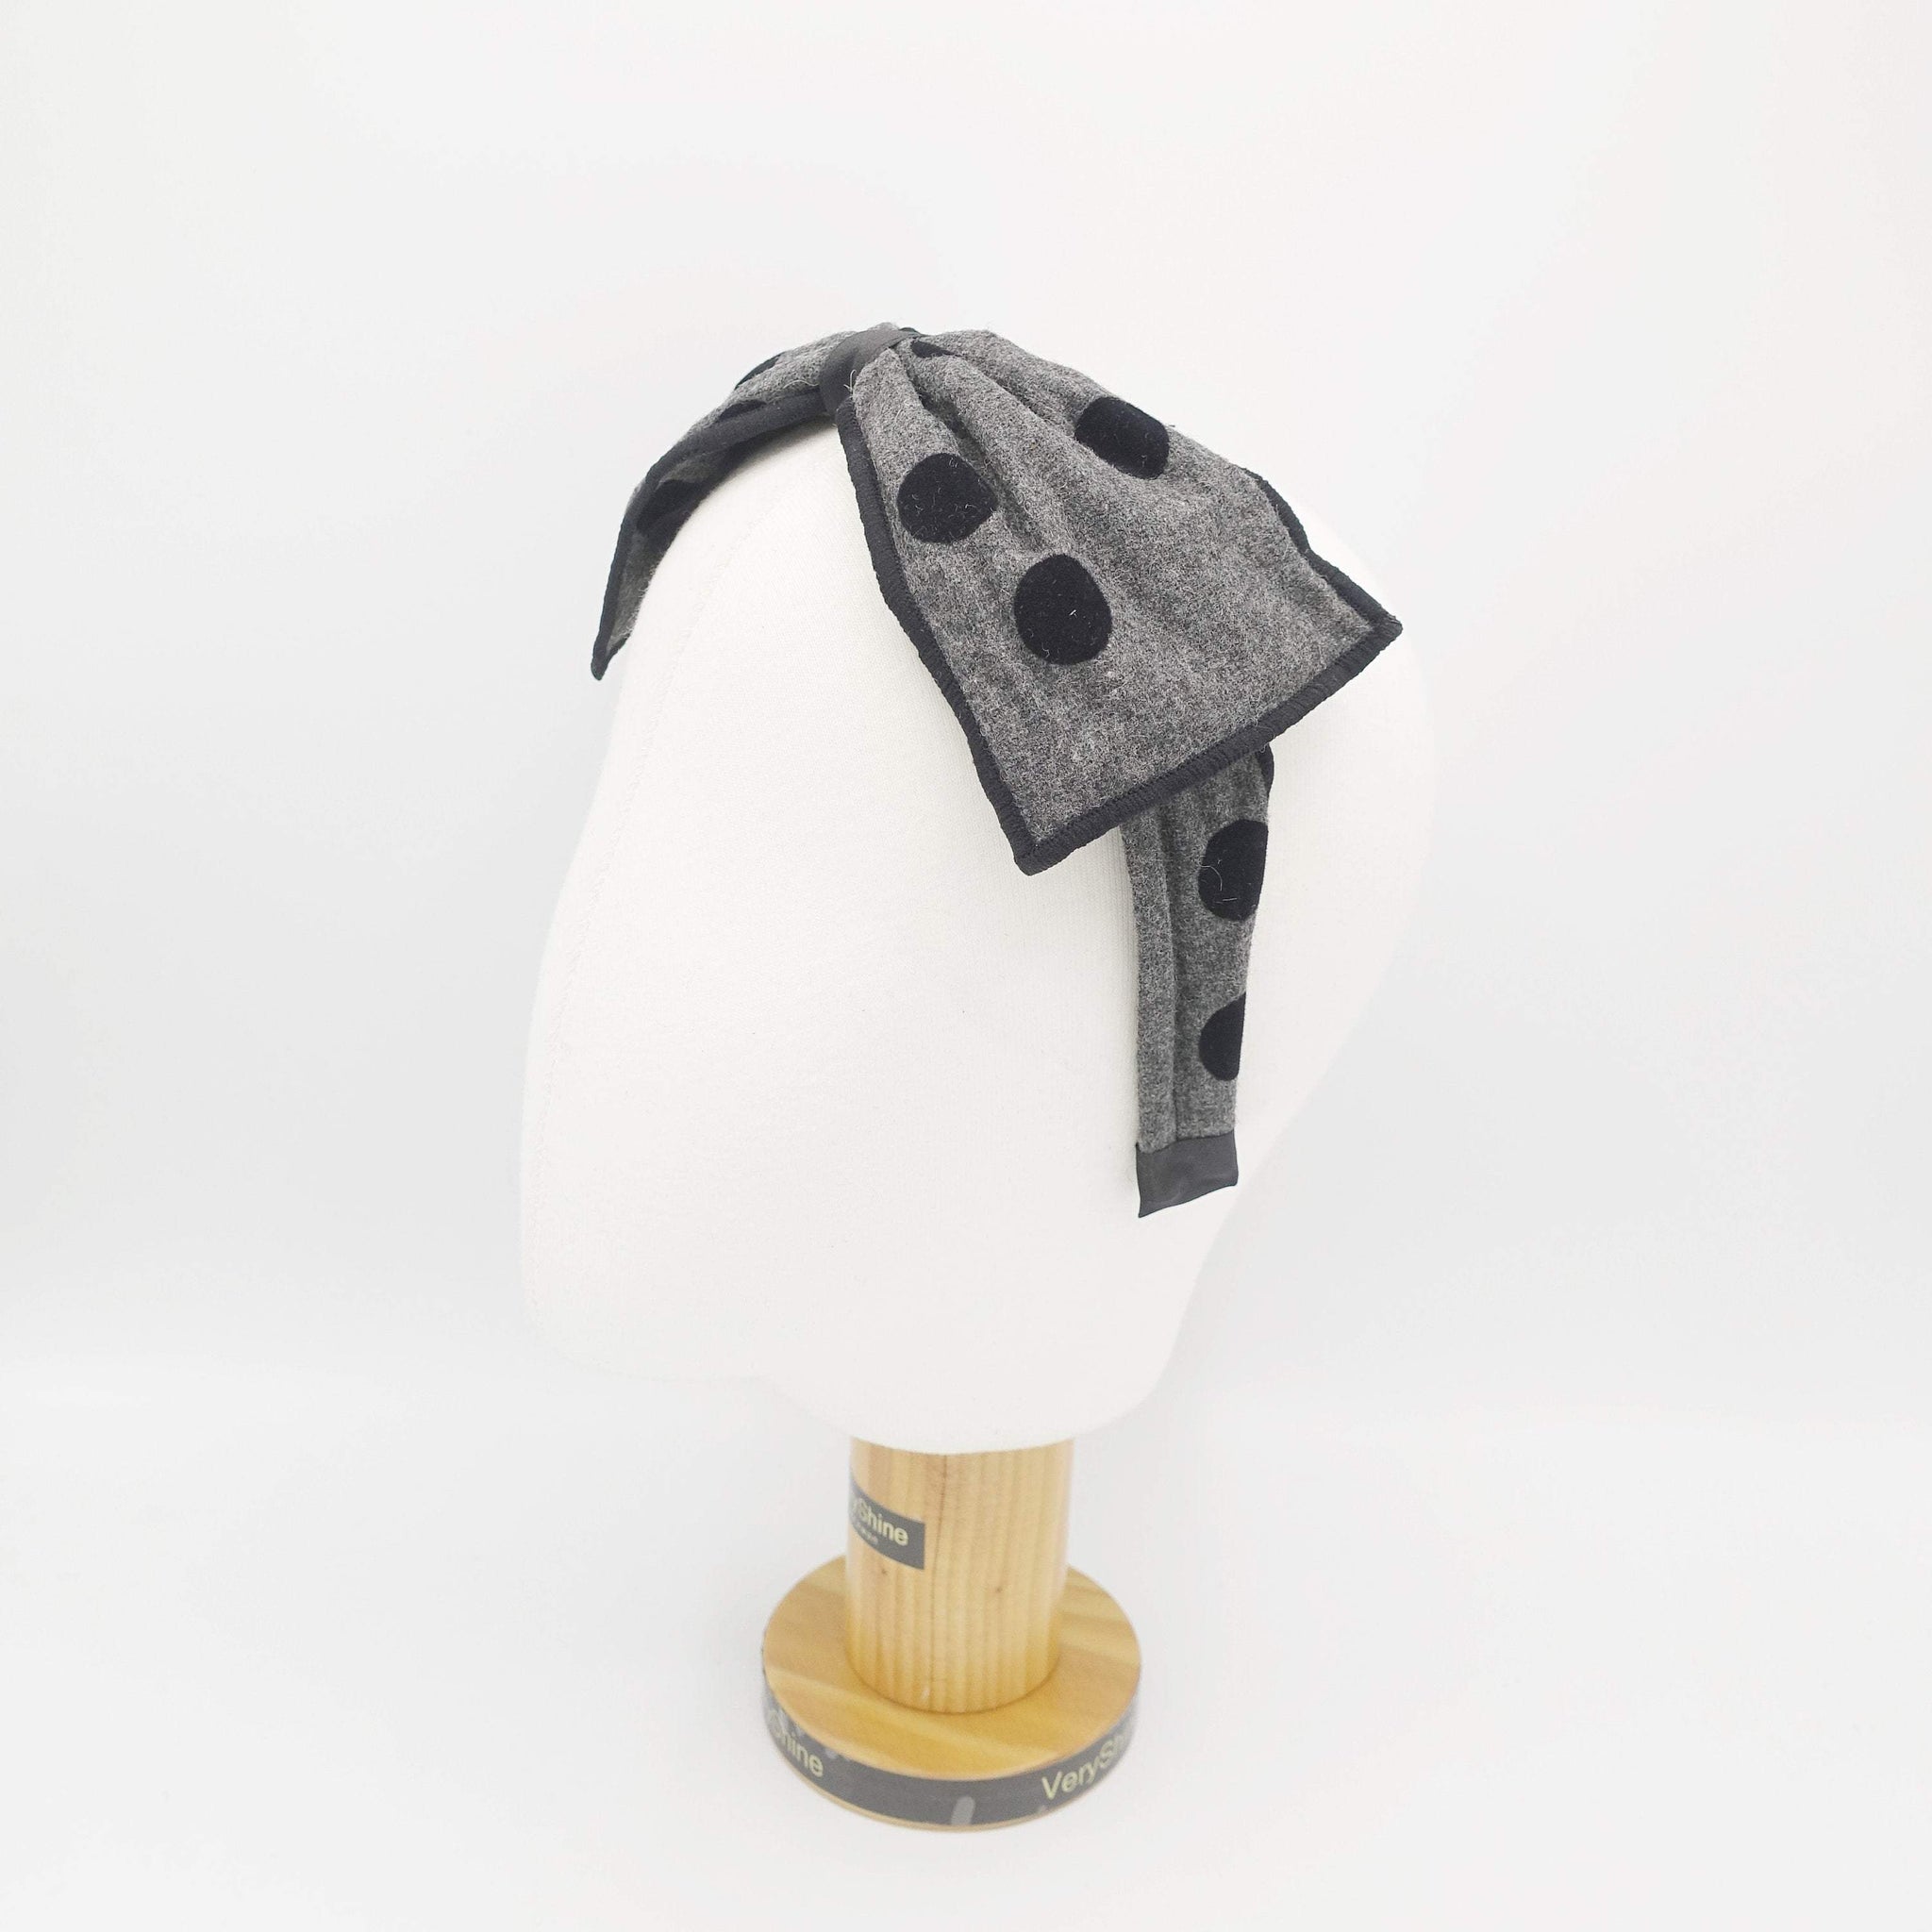 VeryShine black velvet dot woolen bow headband wired hair bow for women